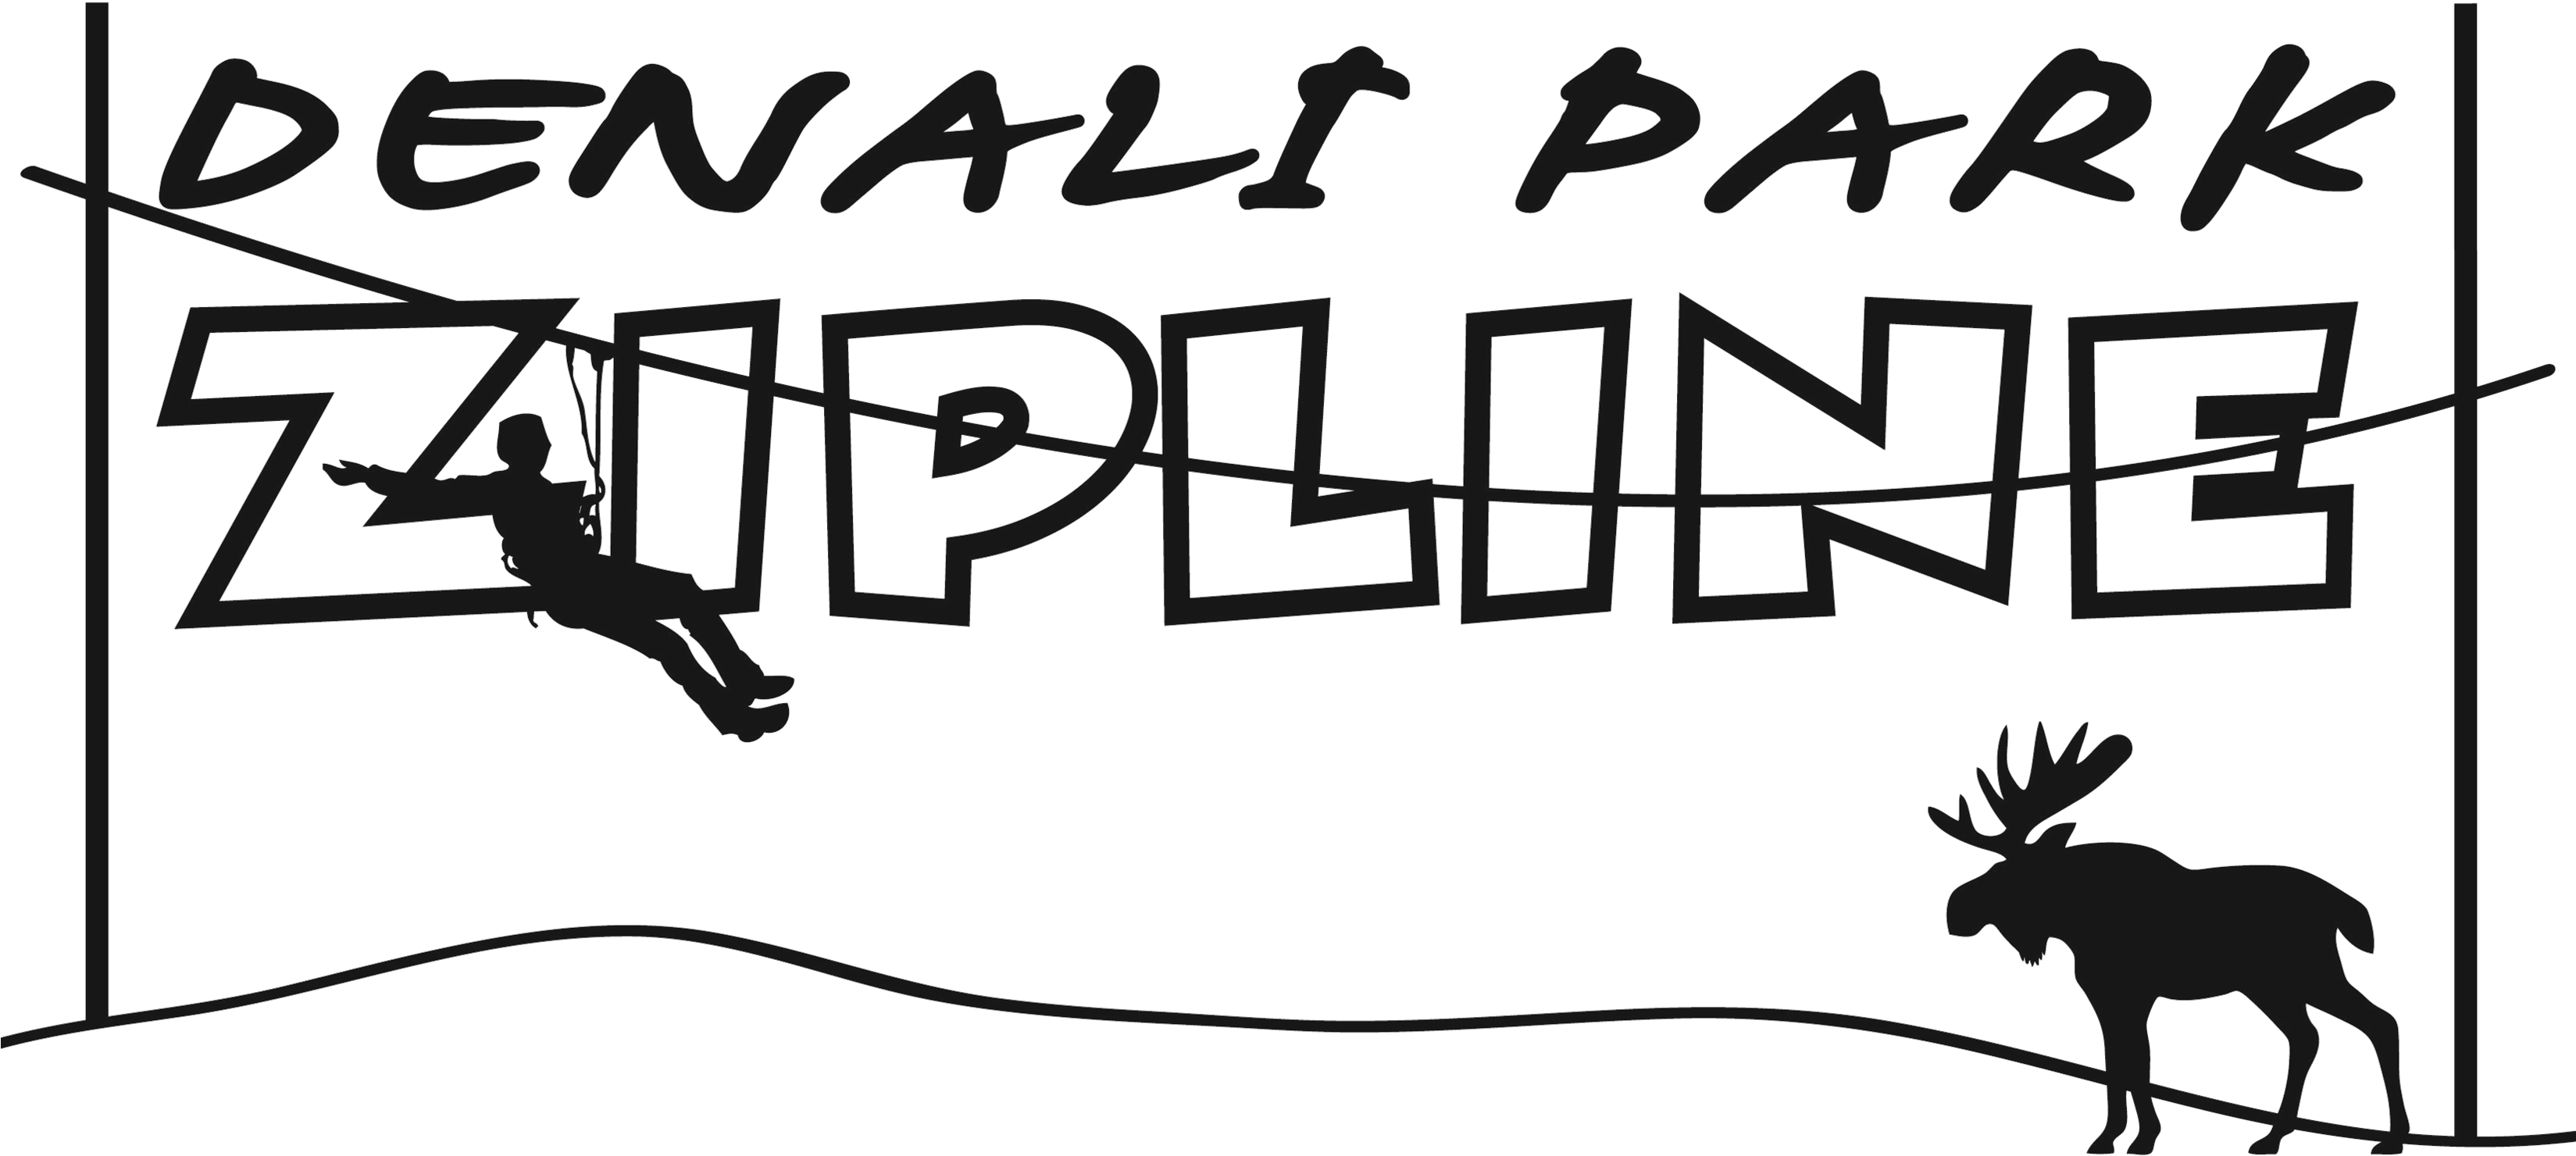 Denali Park Zipline Logo - Denali Park Zipline Logo (3297x1560)